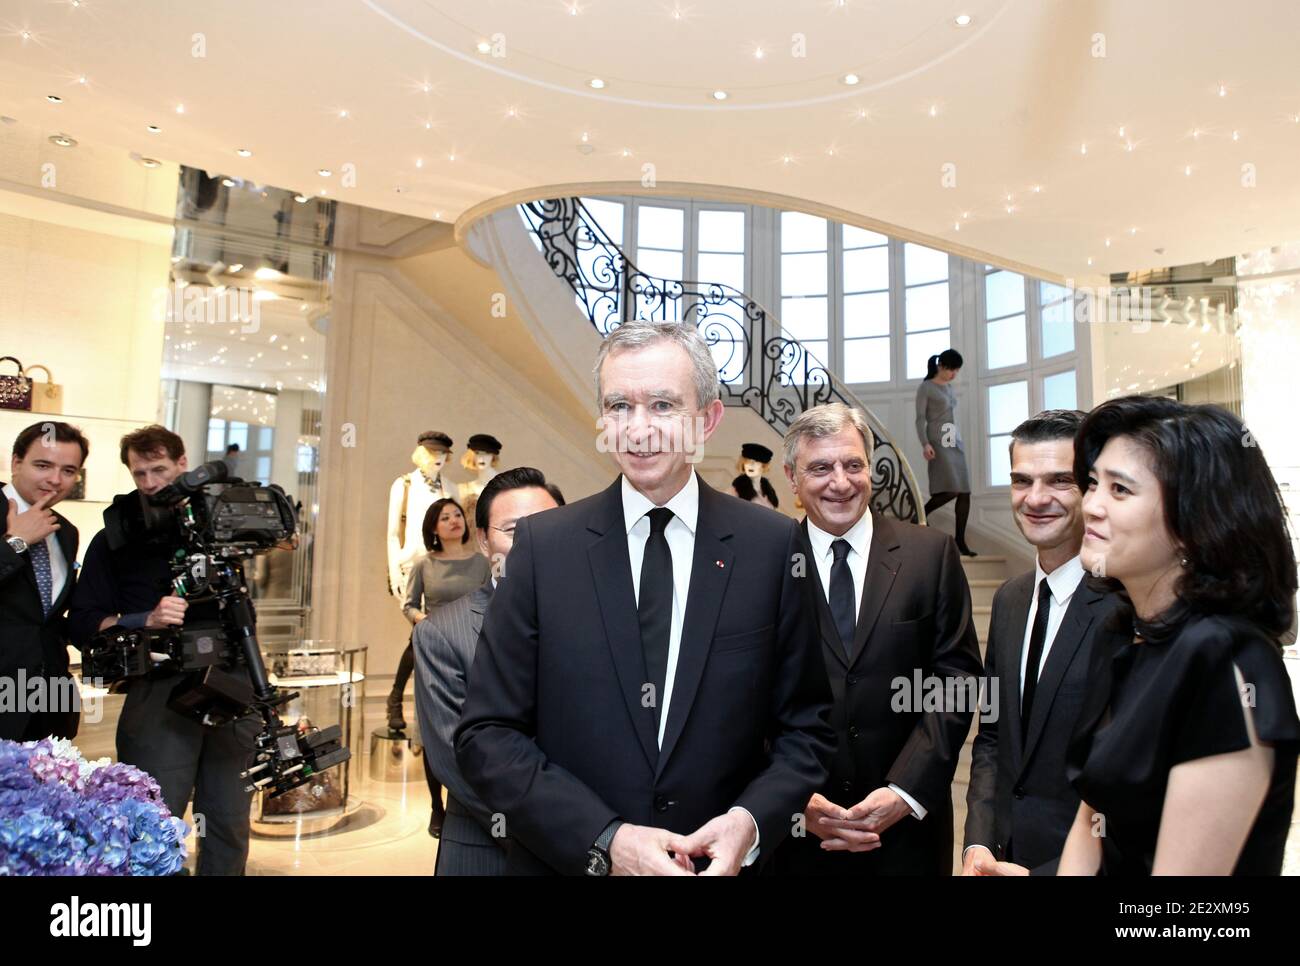 LVMH billionaire CEO Bernard Arnault arrives in China